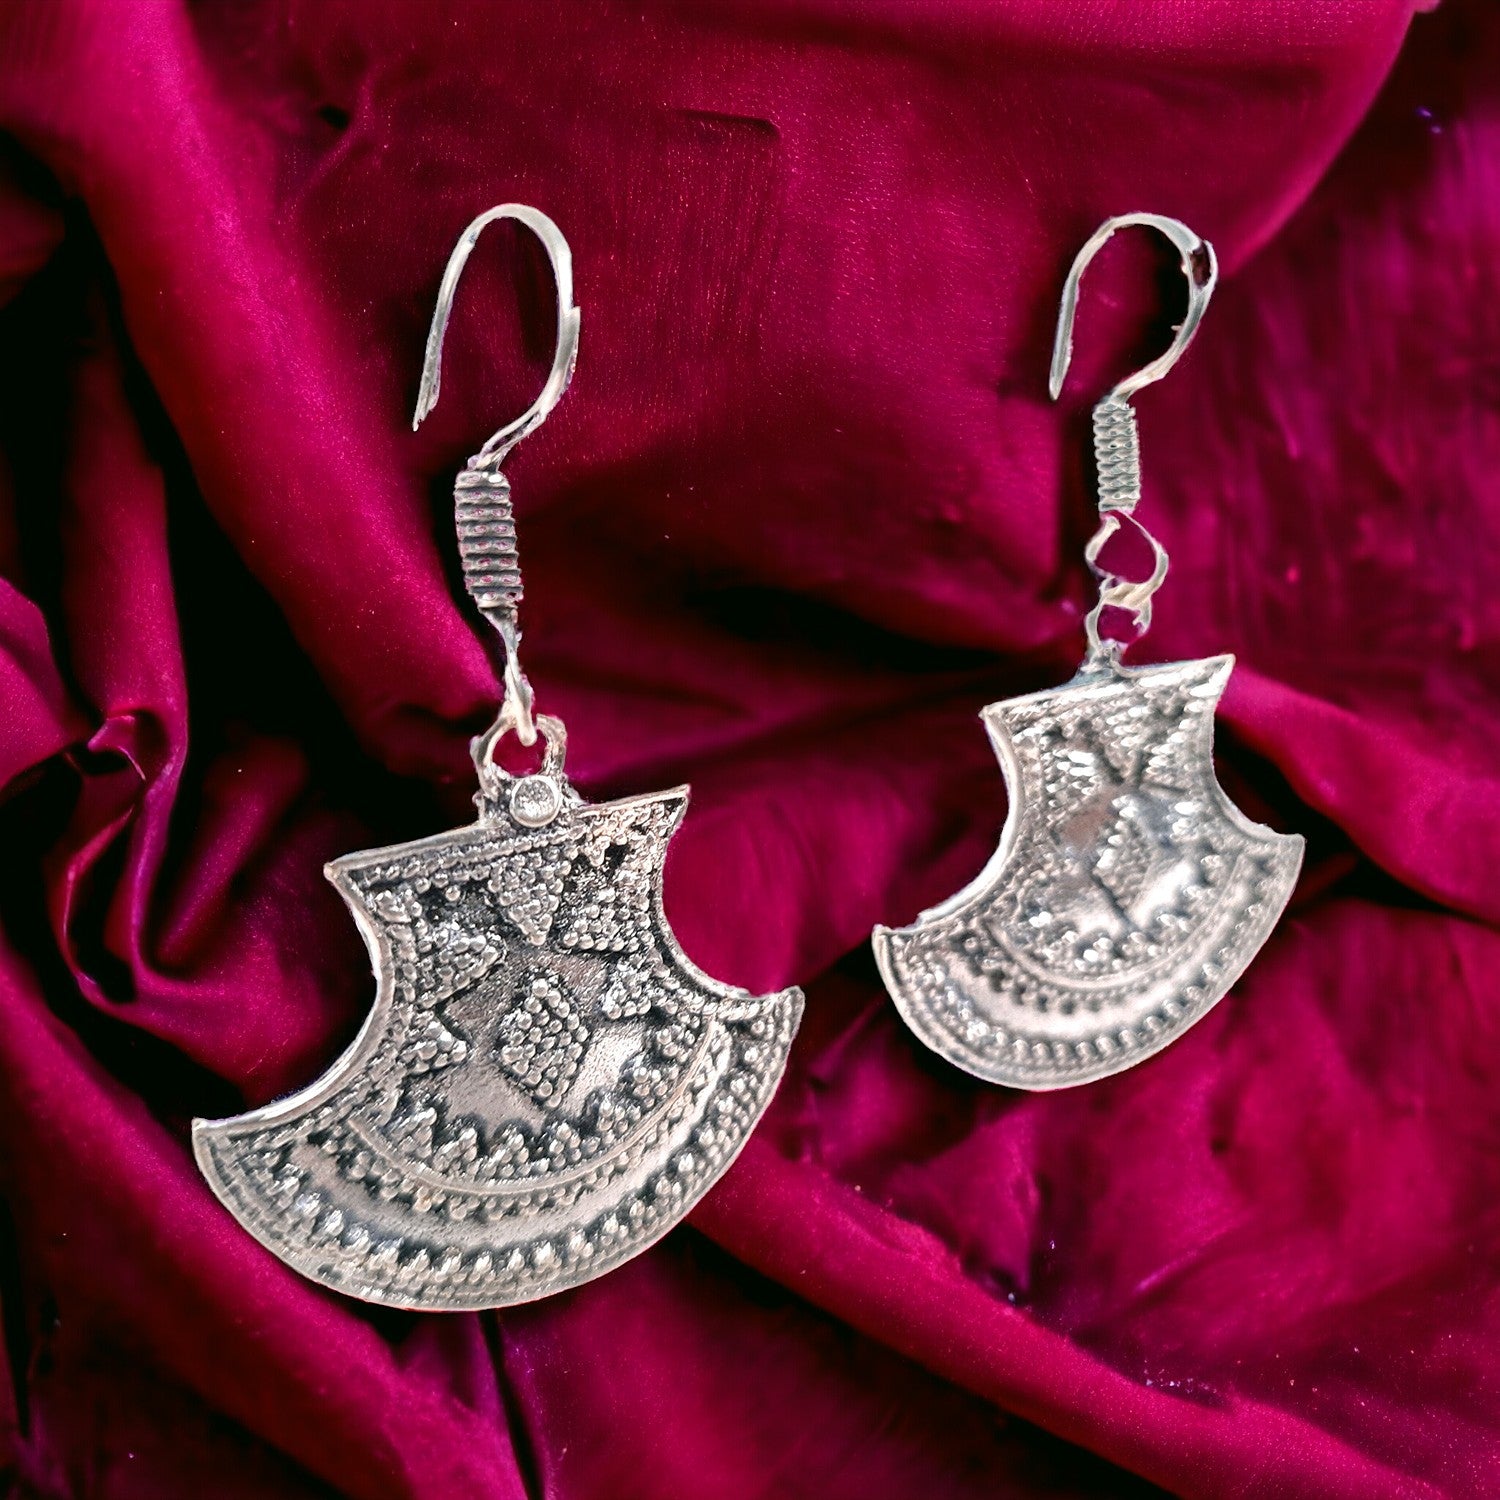 Earrings for Women & Girls | Dangler Earrings | Latest Stylish Fashion Jewellery | Gift for Her, Friendship Day, Valentine's Day Gift - Apkamart